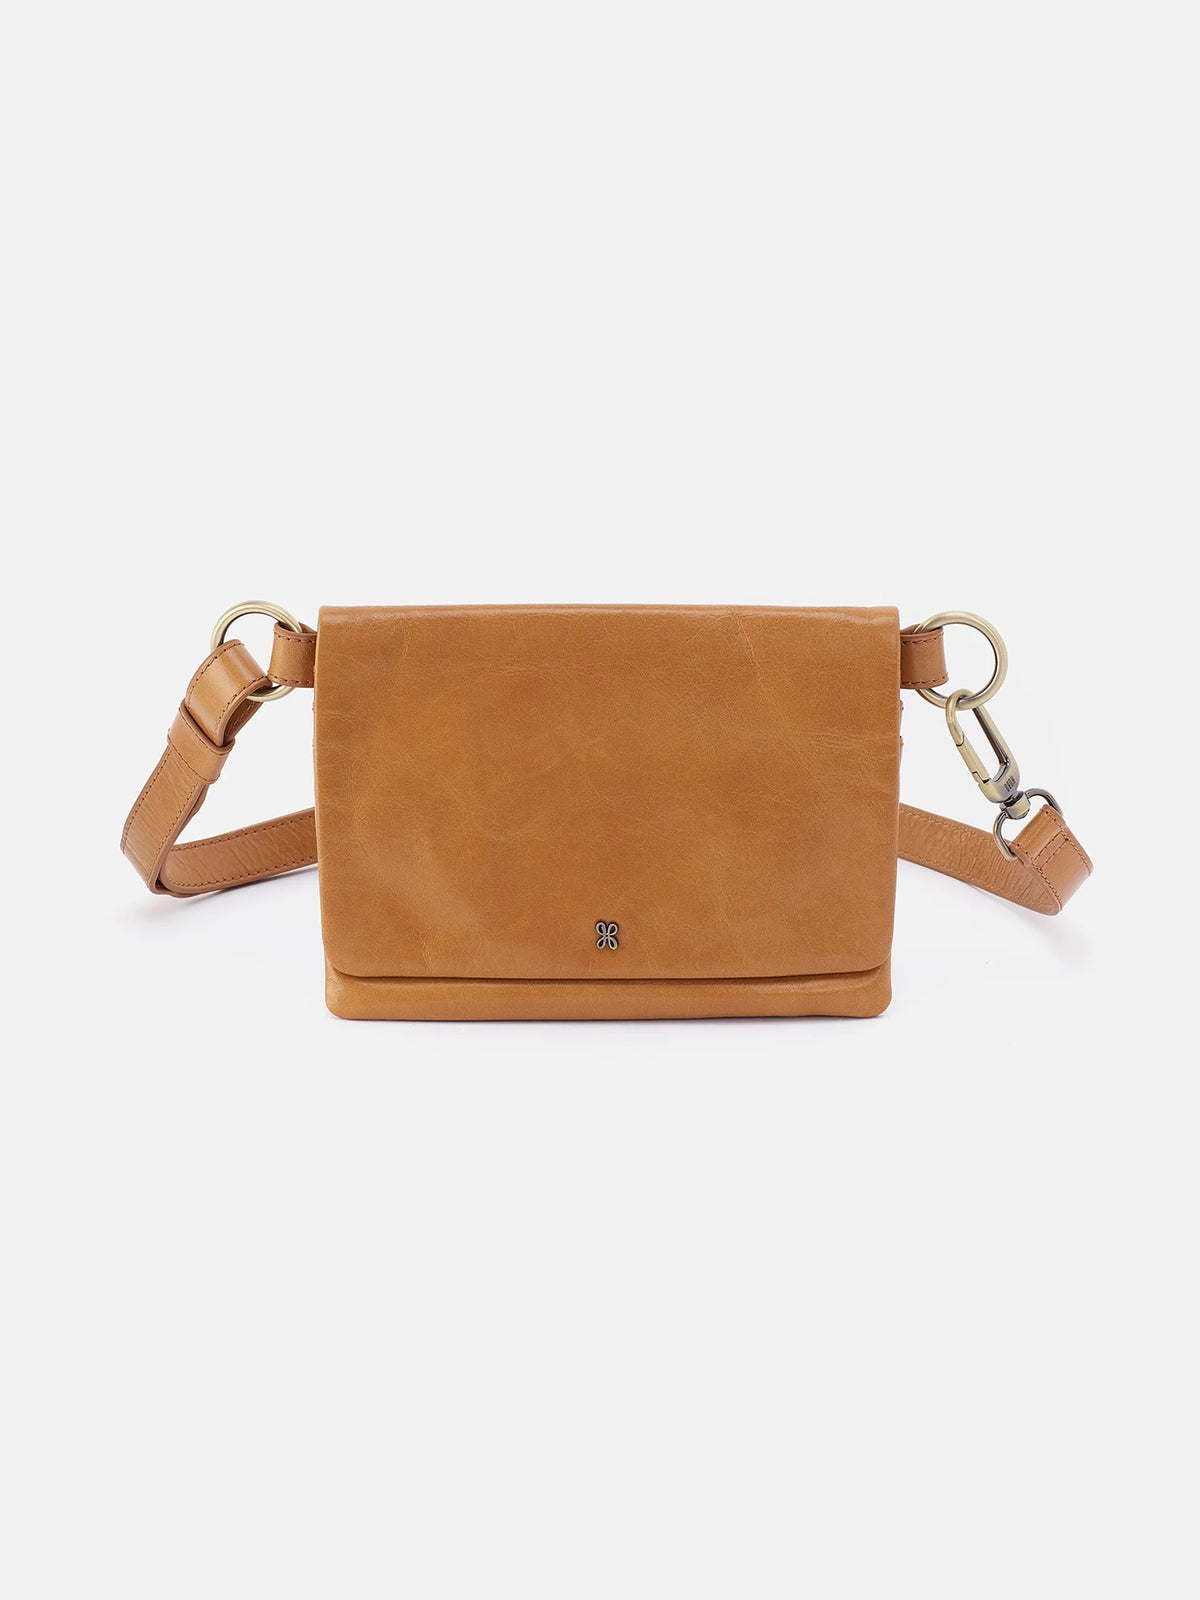 hobo winn belt bag in natural polished leather